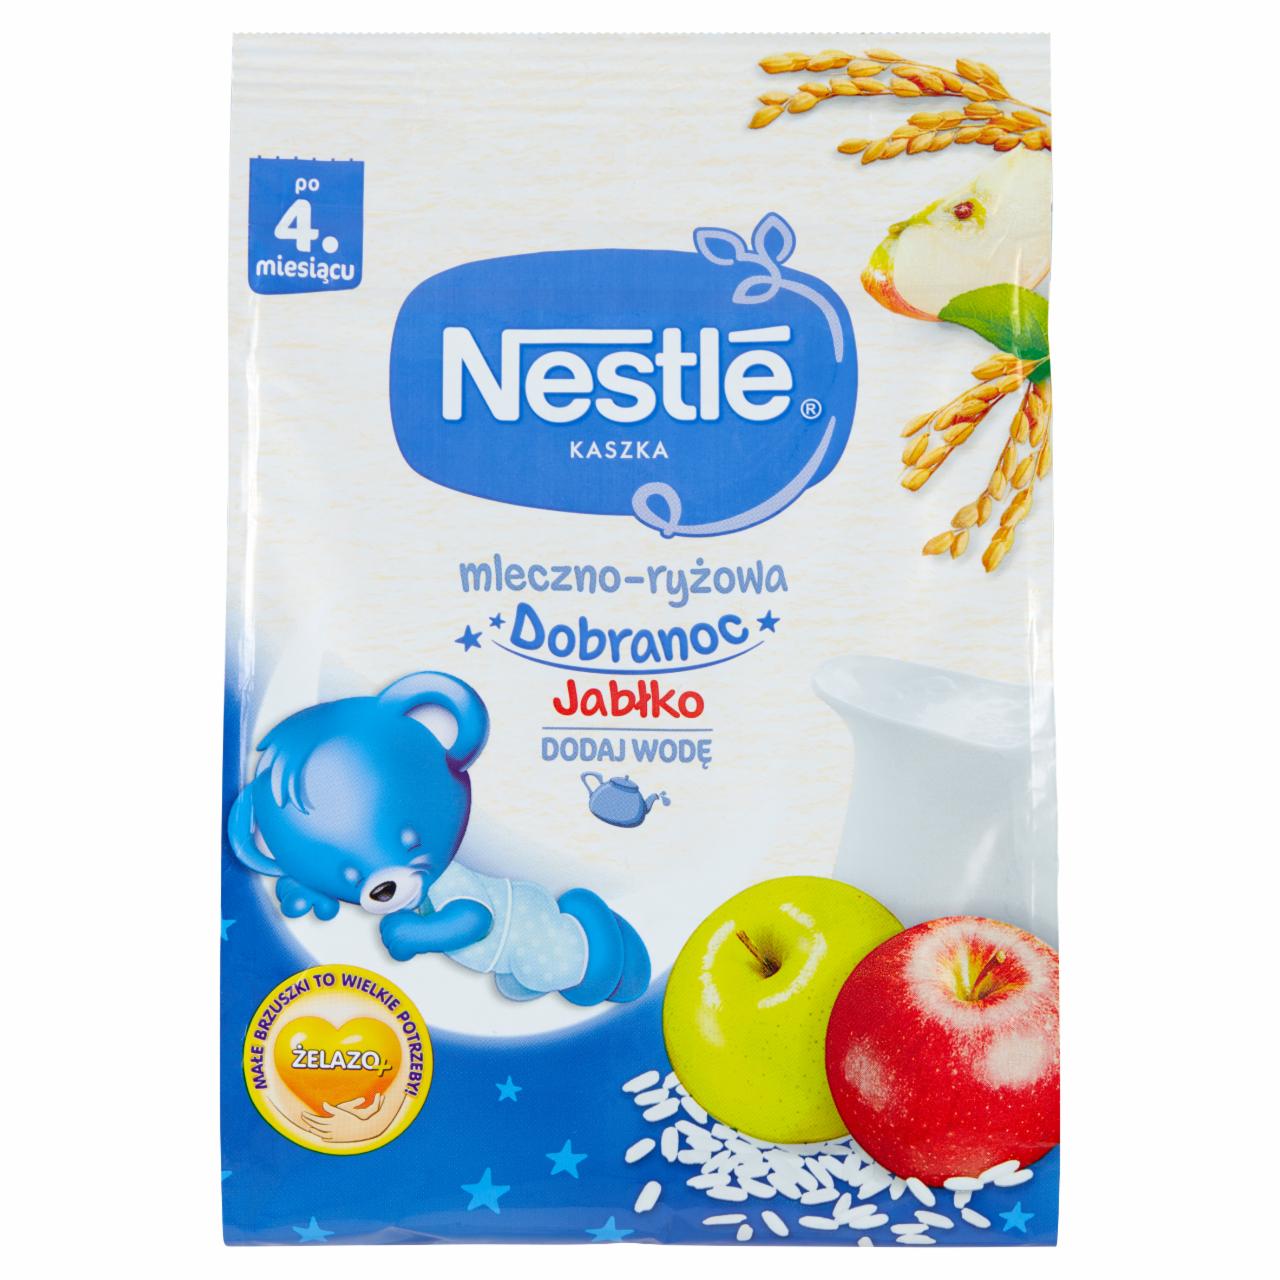 Zdjęcia - Nestlé Kaszka dobranoc mleczno-ryżowa jabłko dla niemowląt po 4. miesiącu 230 g